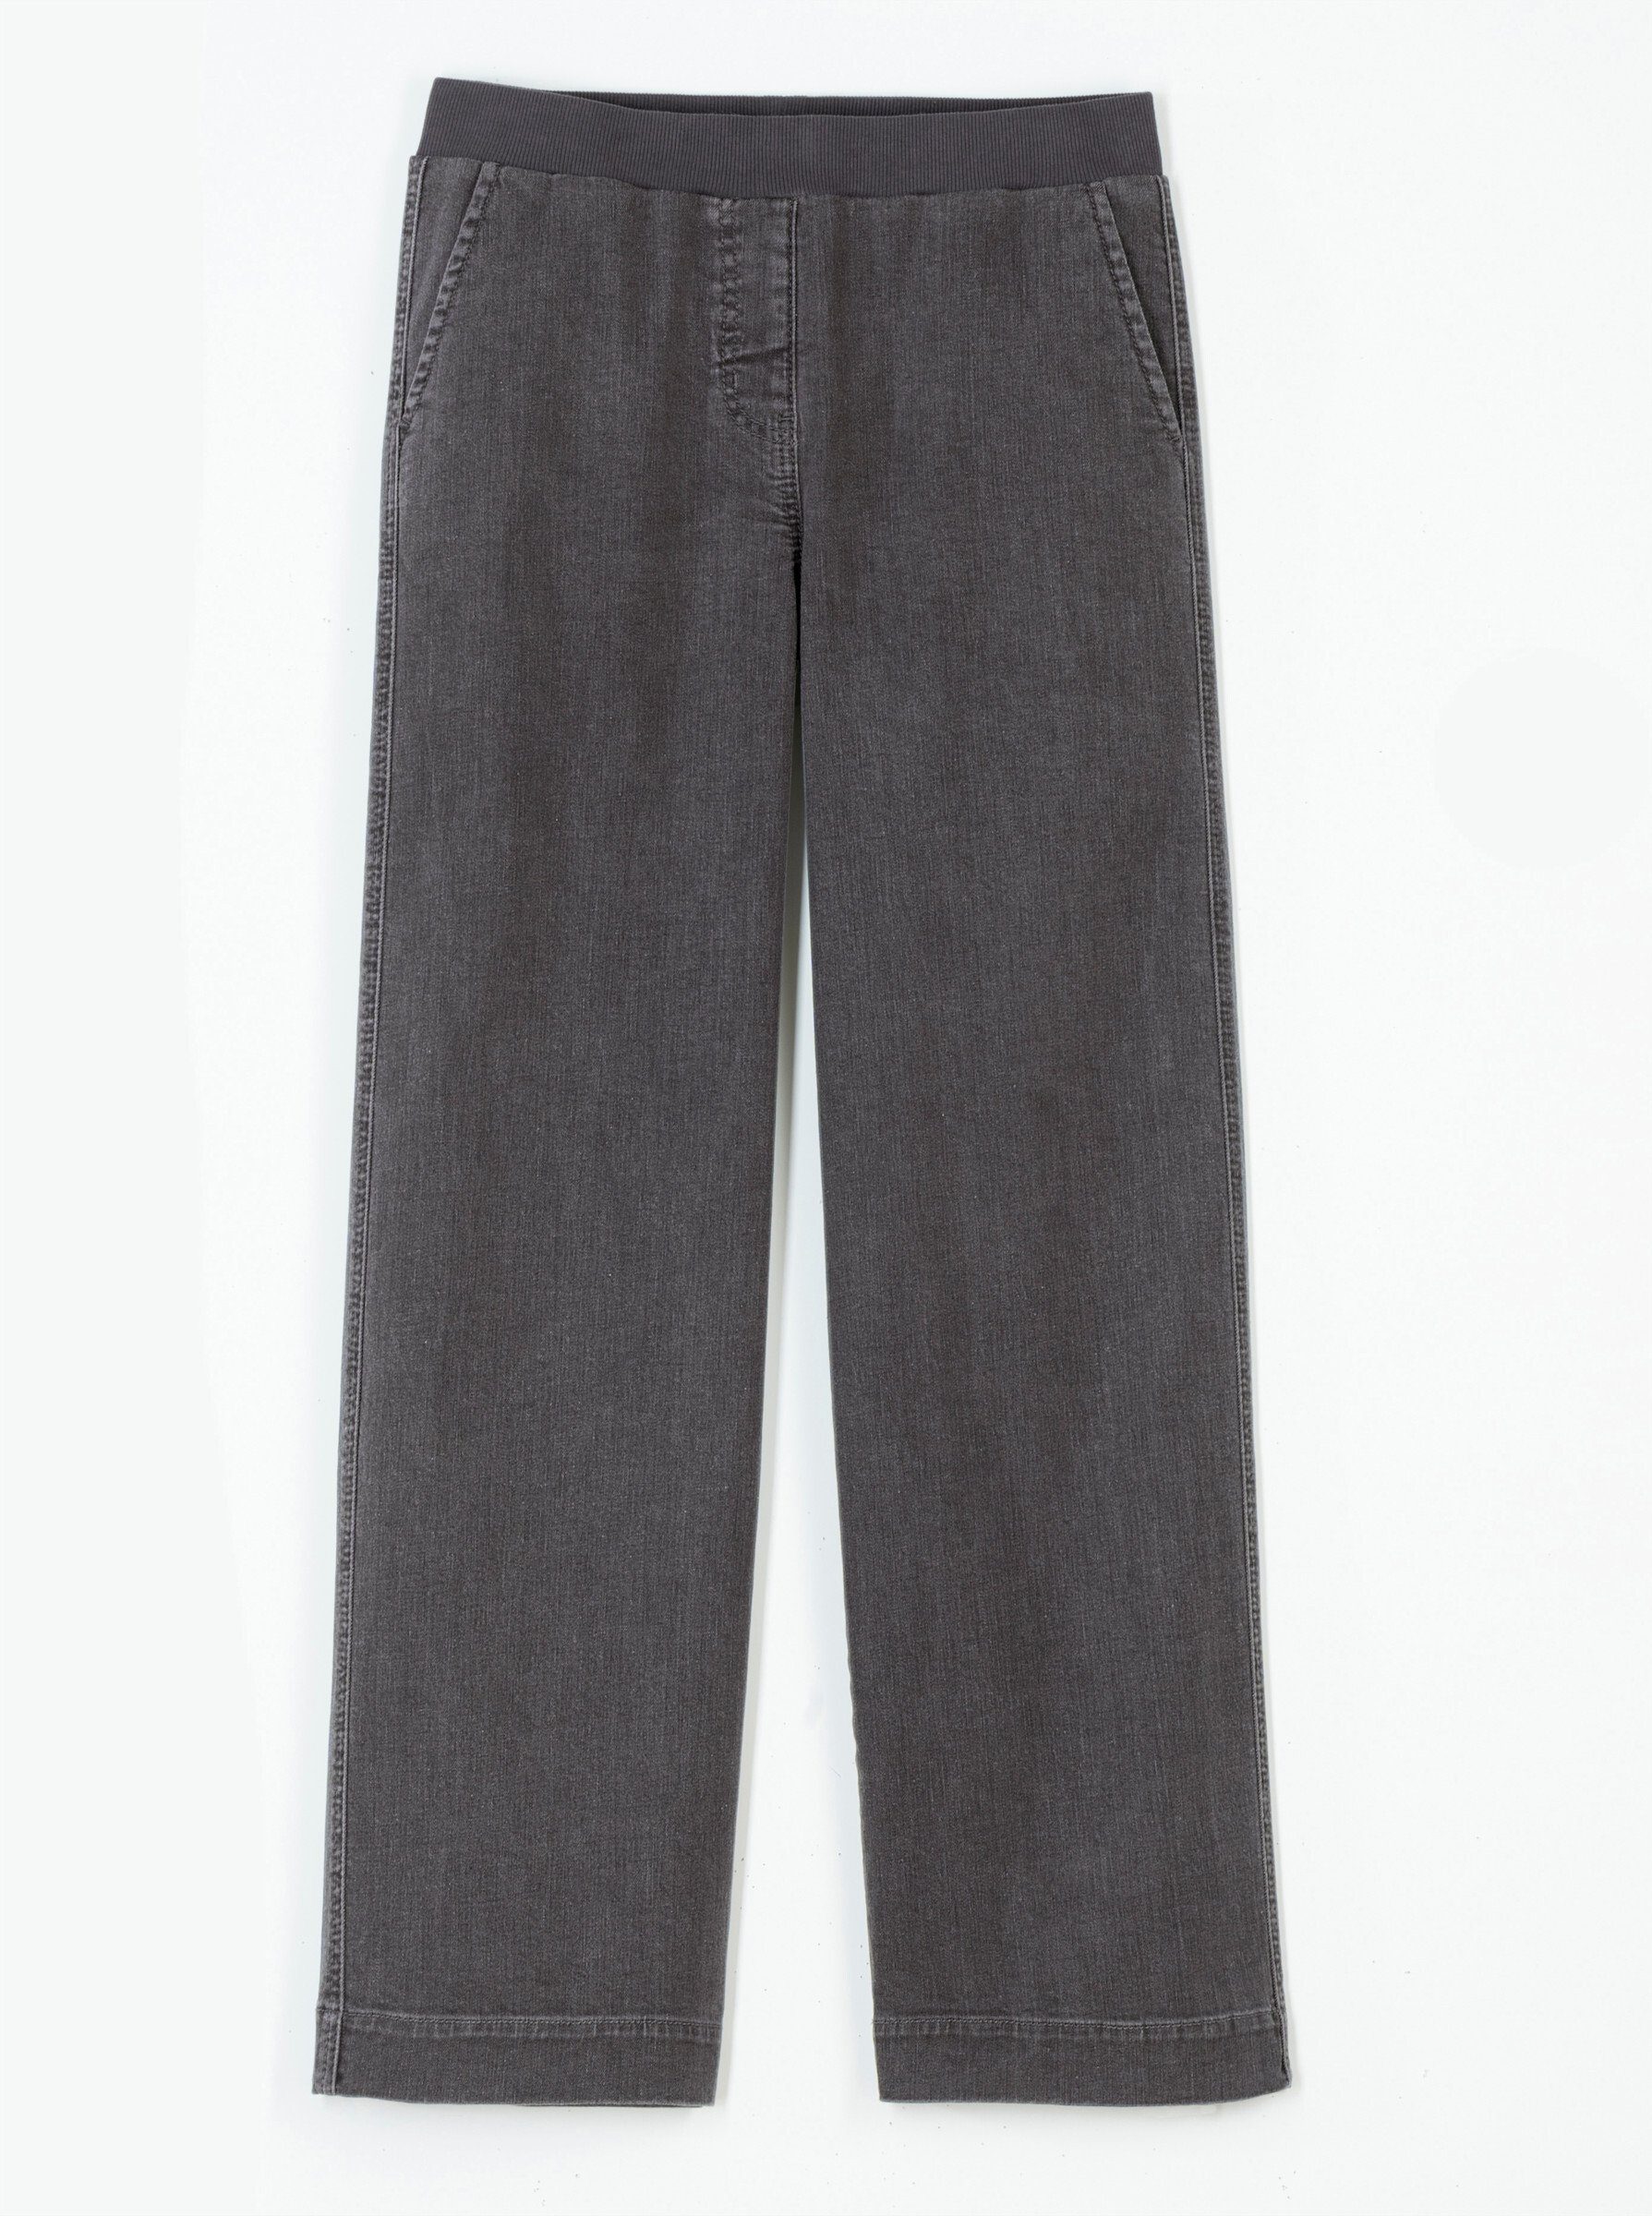 Jeans WEIDEN grey-denim WITT Bequeme